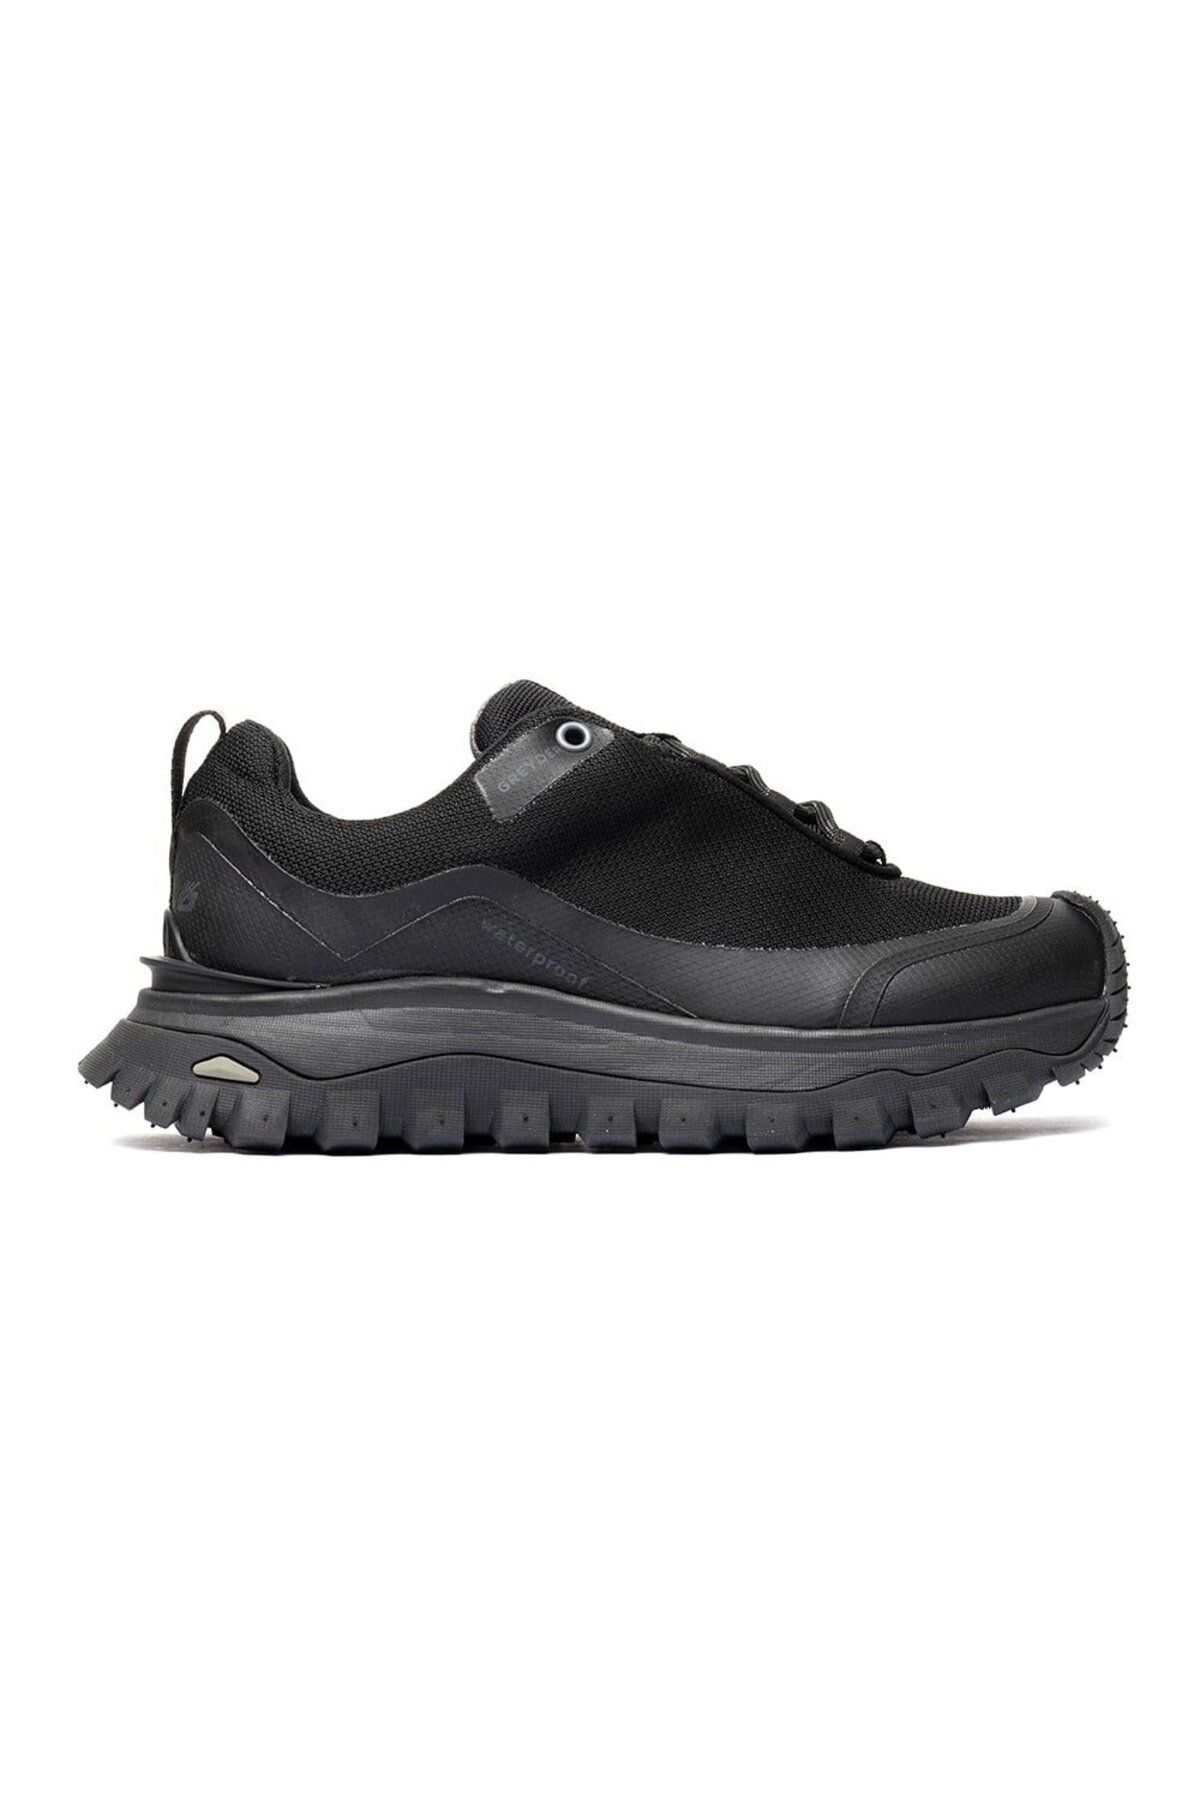 Greyder Kadın Siyah Su Geçirmez Outdoor Ayakkabı 3k2ga16357